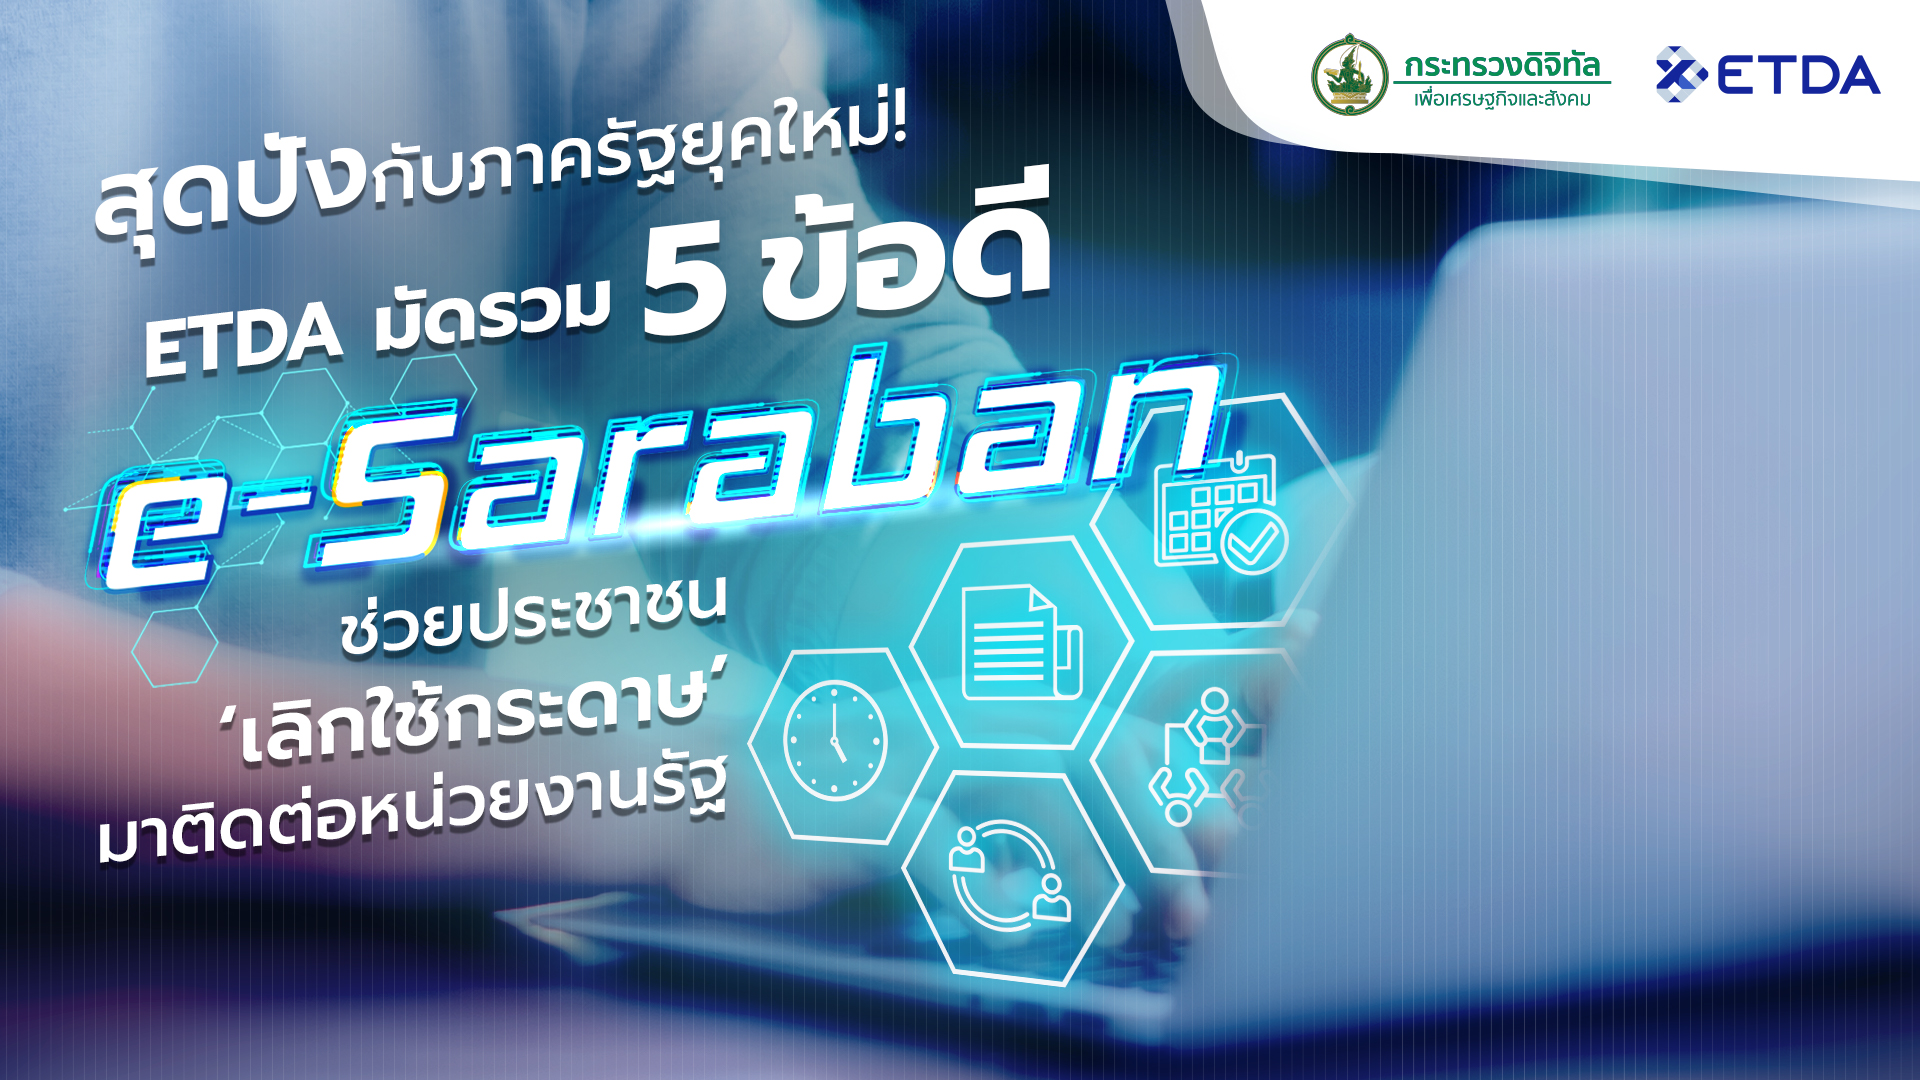 สุดปังกับภาครัฐยุคใหม่! ETDA มัดรวม 5 ข้อดี e-Saraban ช่วยประชาชน ‘เลิกใช้กระดาษ’ มาติดต่อหน่วยงานรัฐ